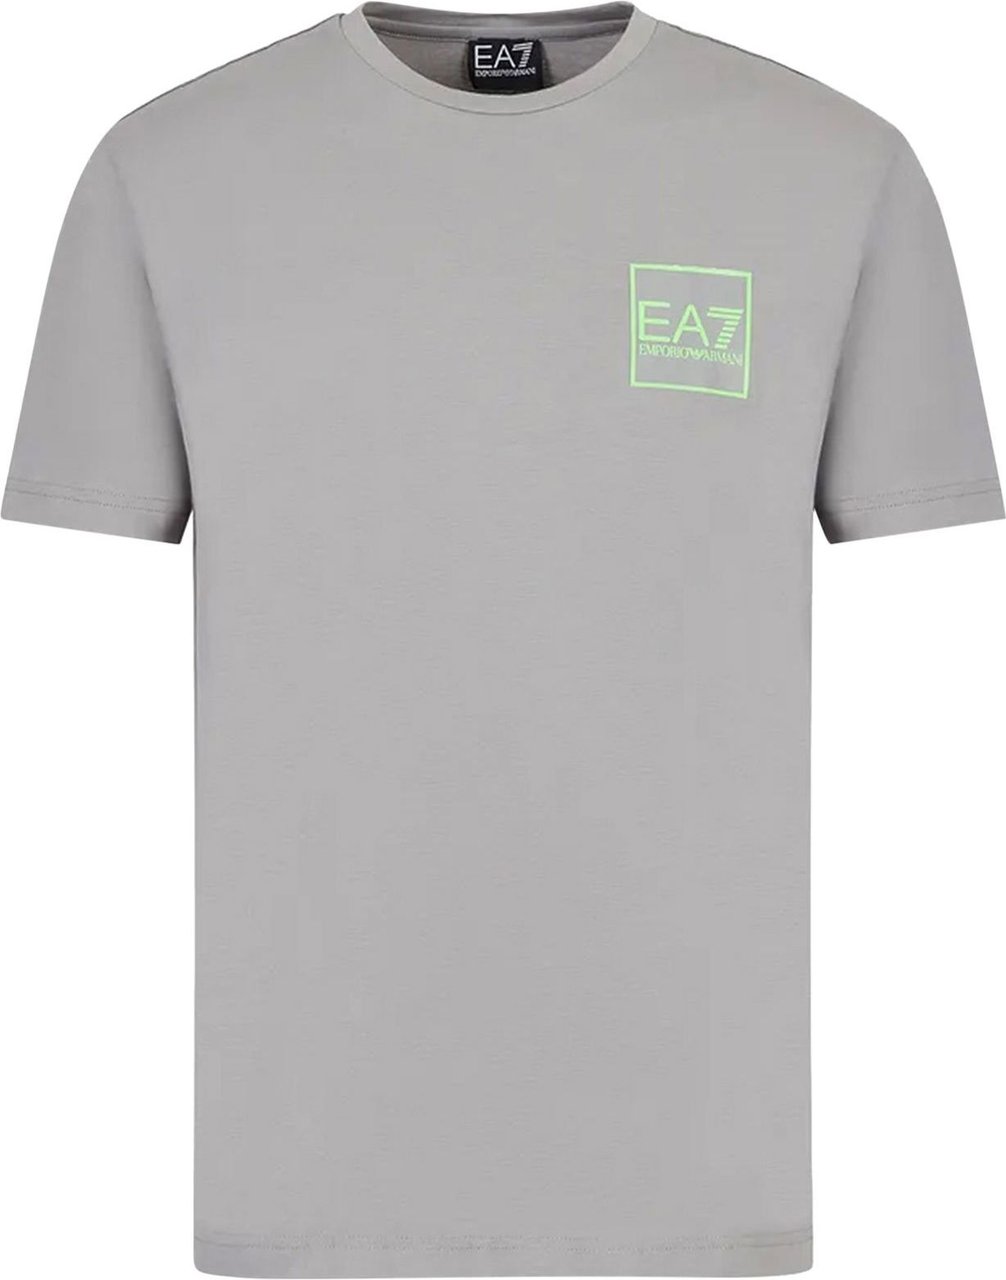 EA7 T-Shirt Sharkskin Grijs